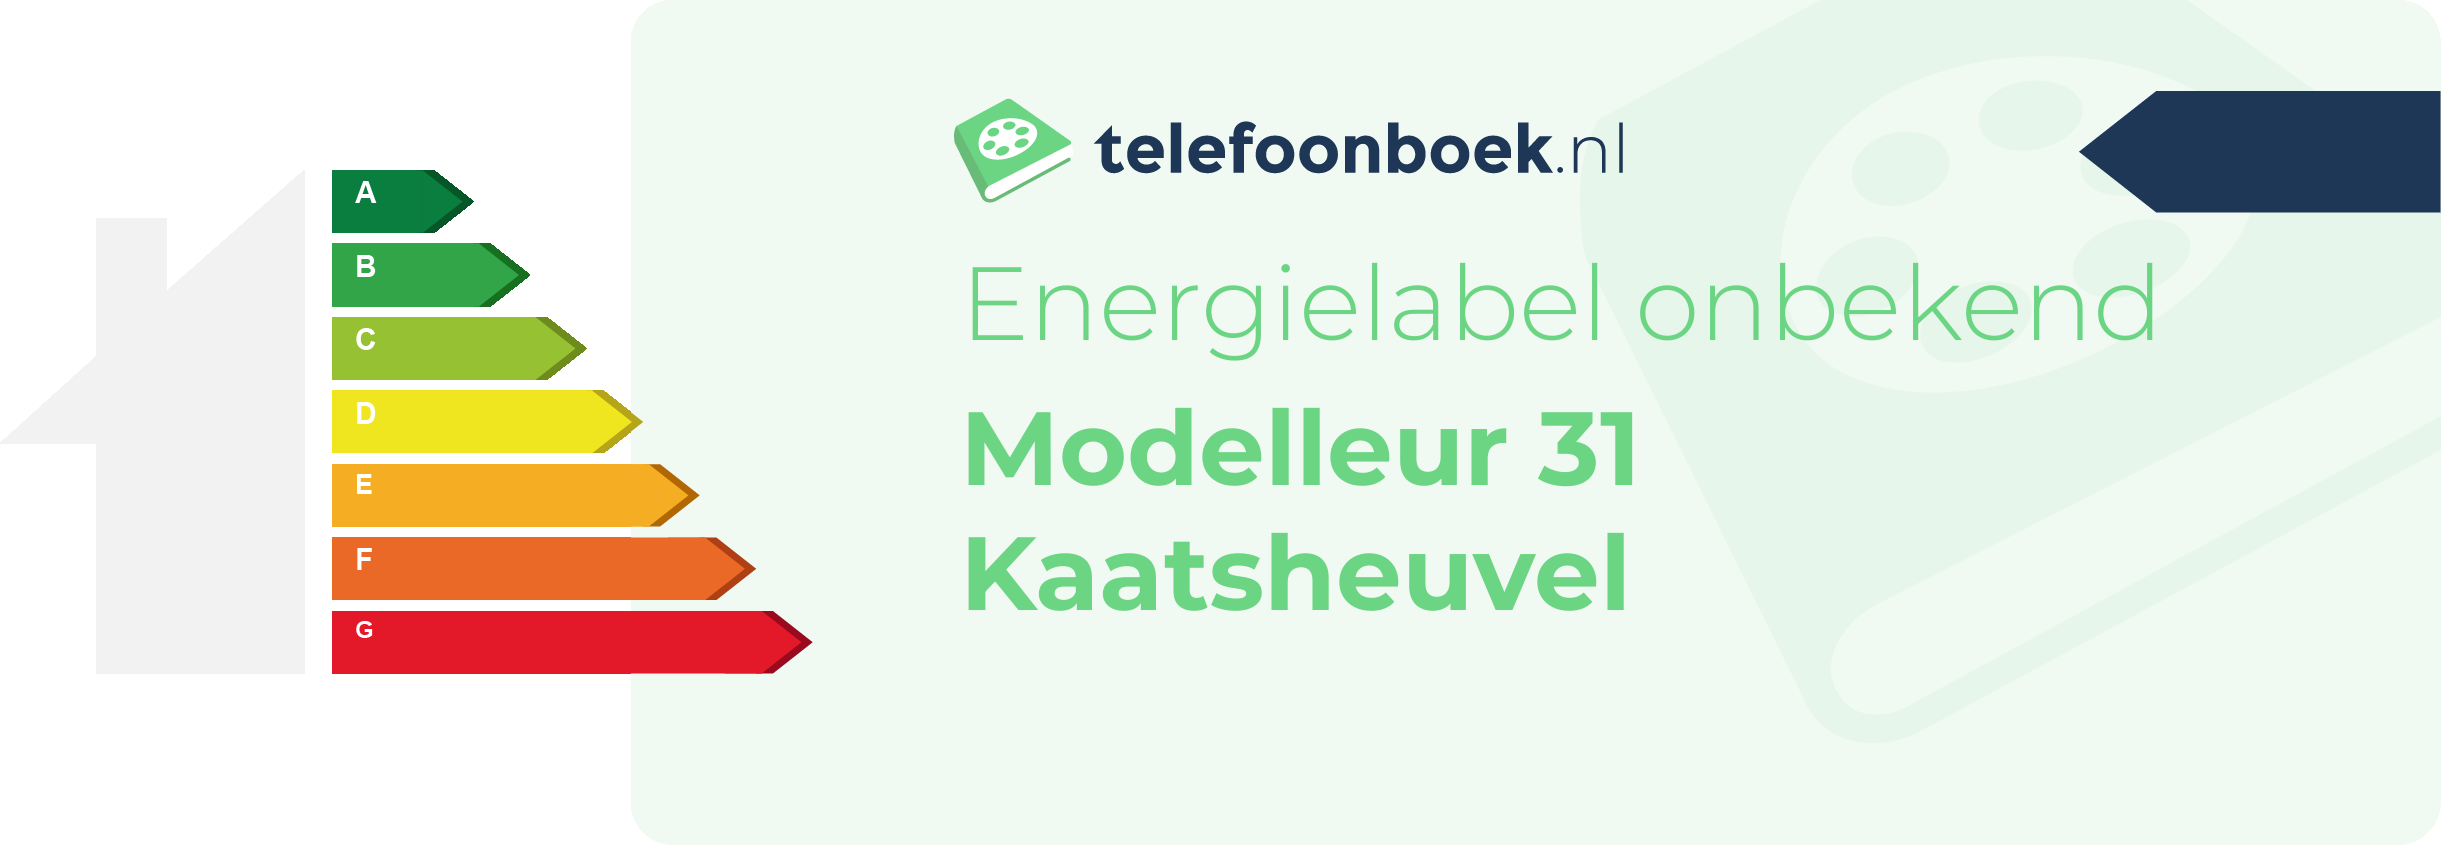 Energielabel Modelleur 31 Kaatsheuvel